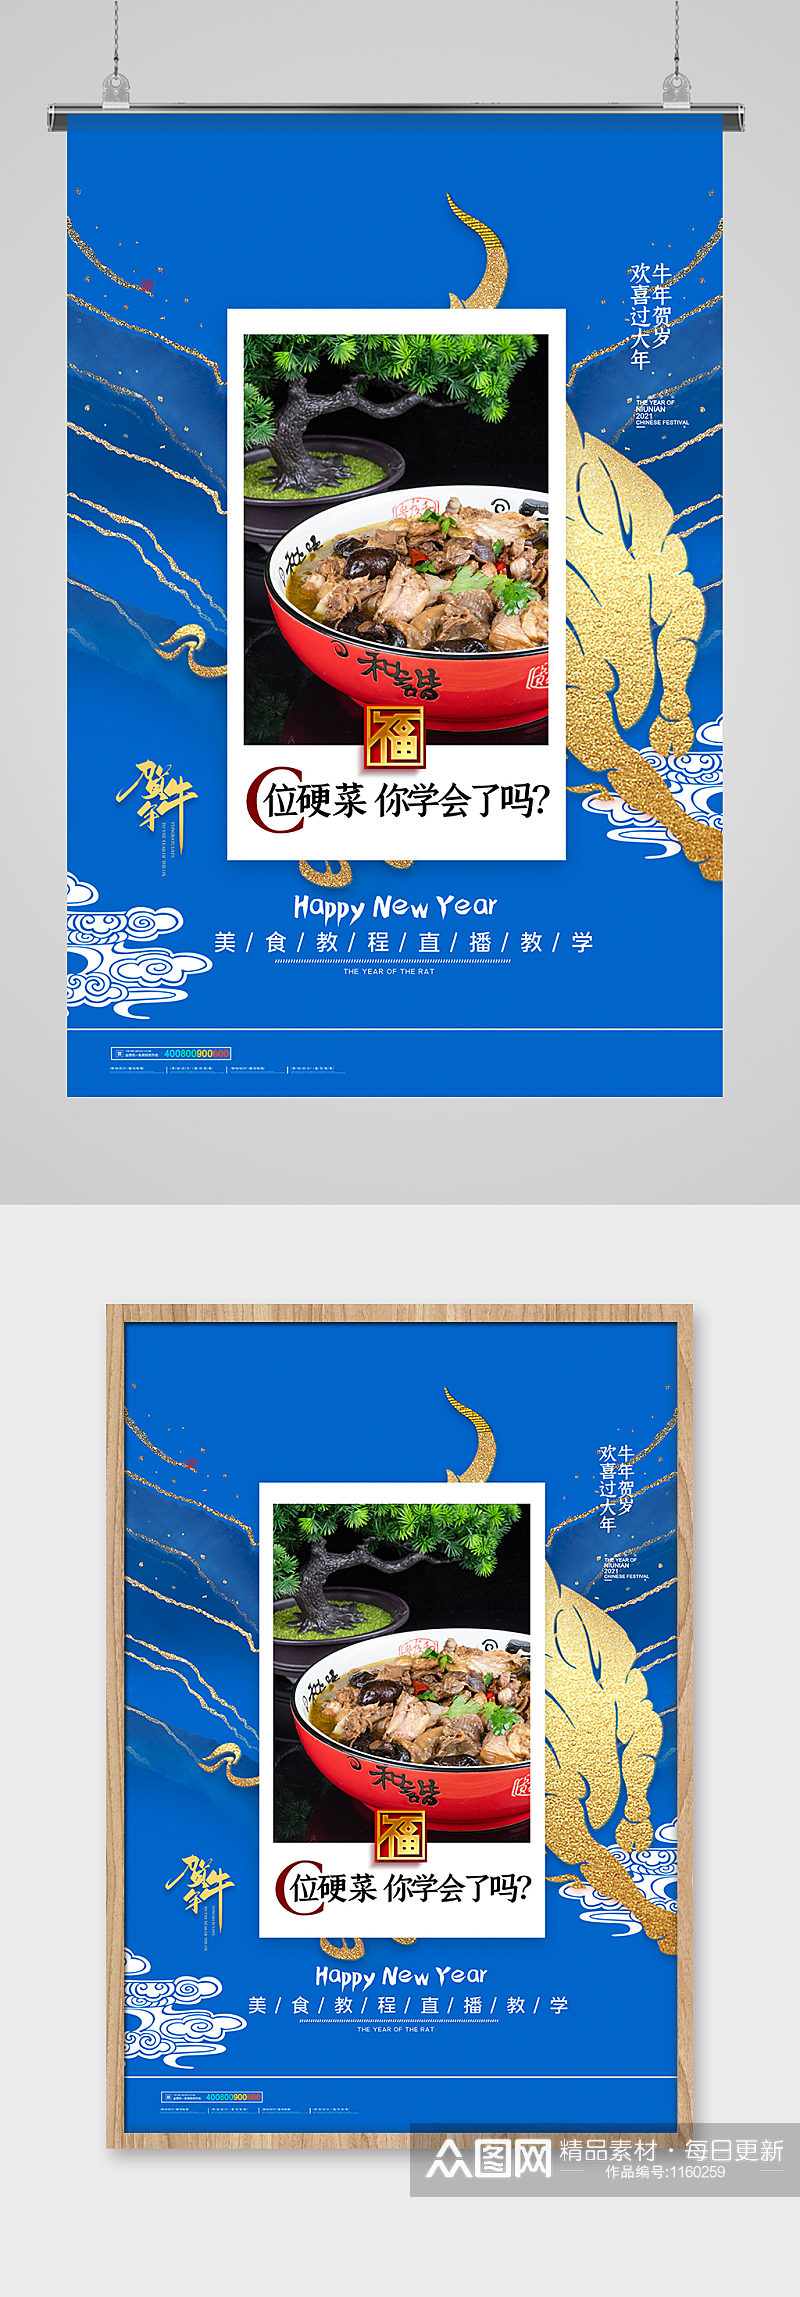 简约中国传统新年春节贺牛年美食宣传海报素材